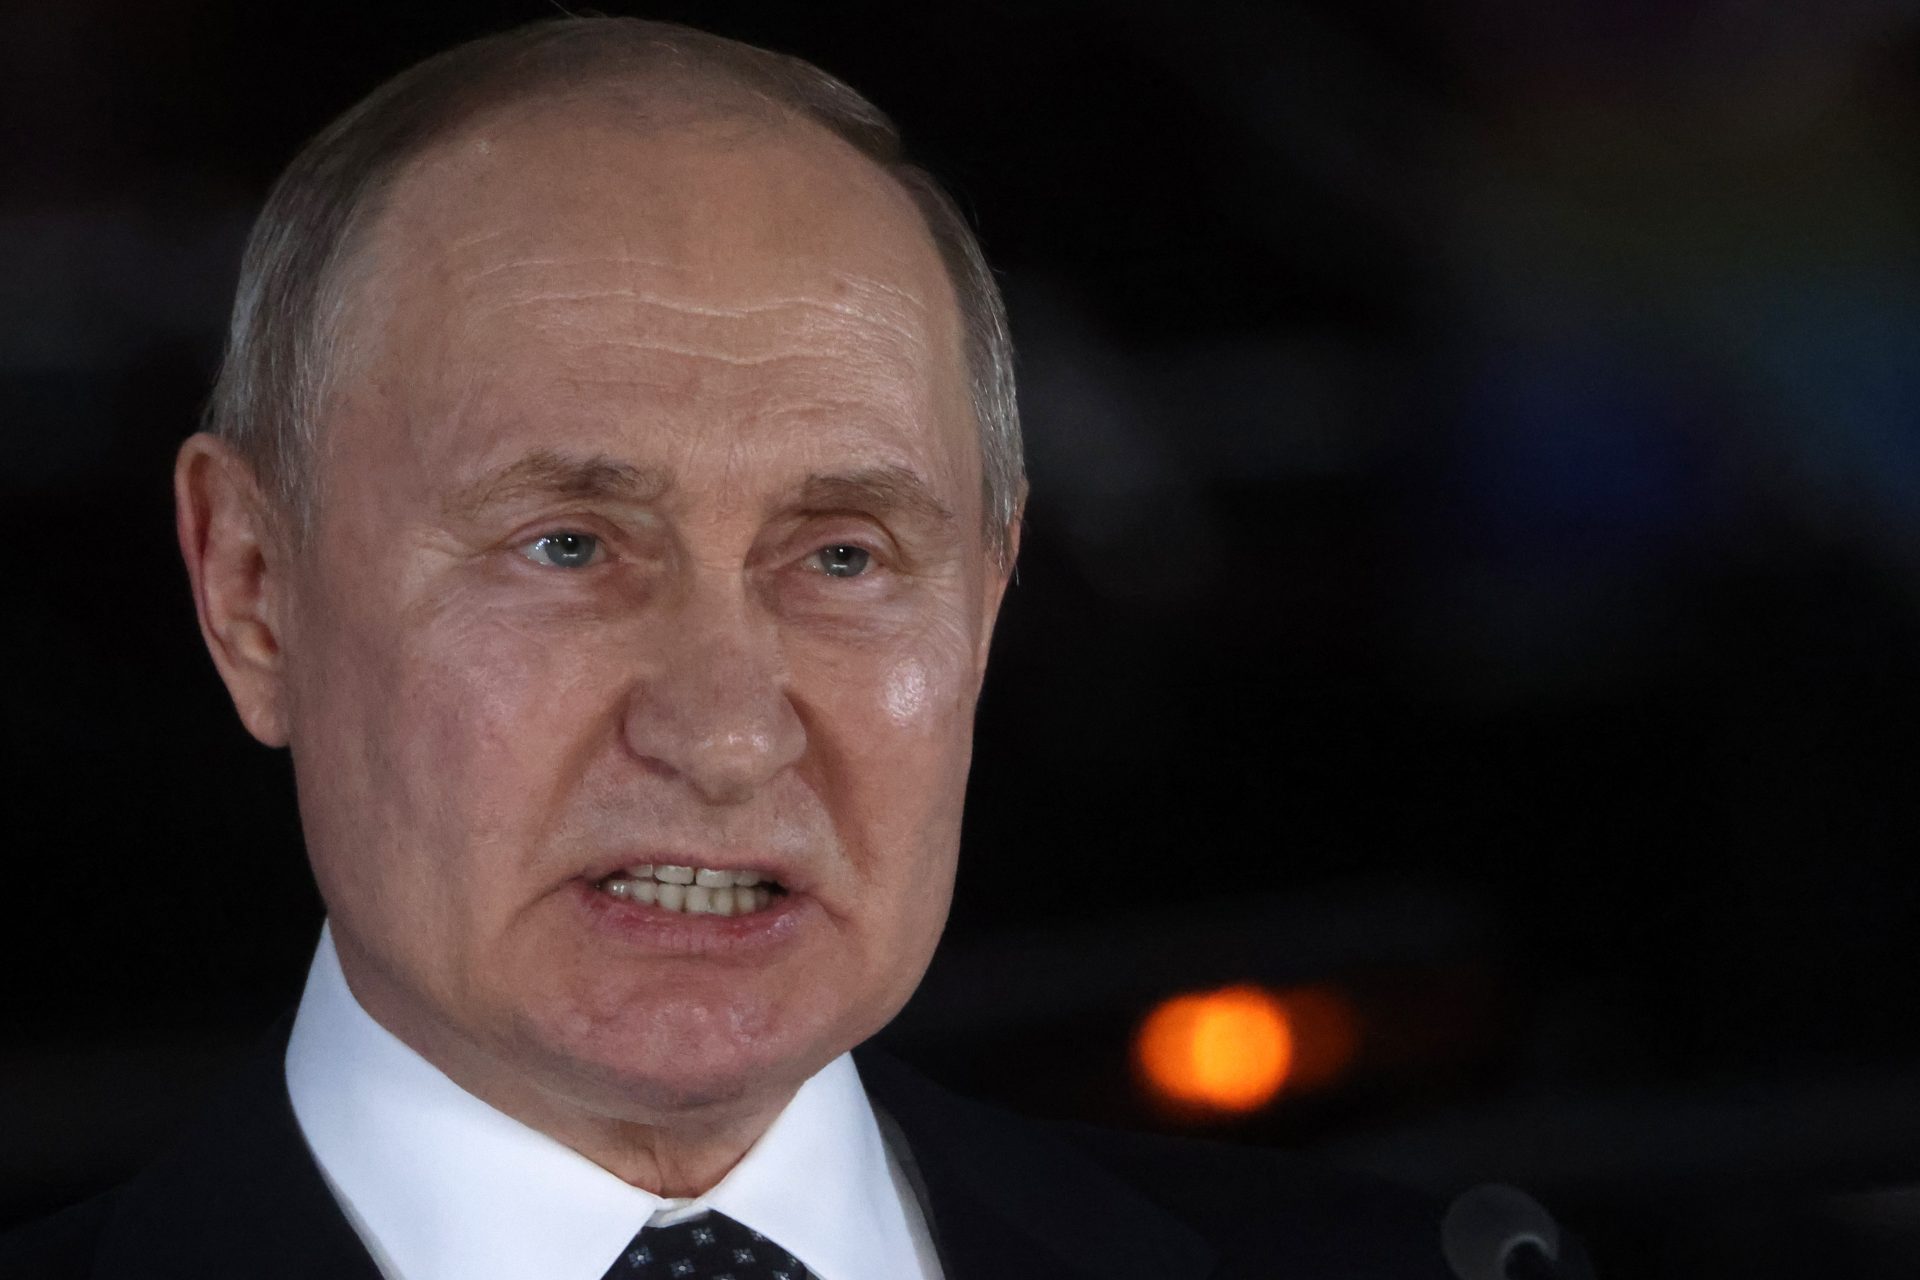 Putin concede la sua prima intervista in 2 anni a un giornalista occidentale: ecco cosa ha detto